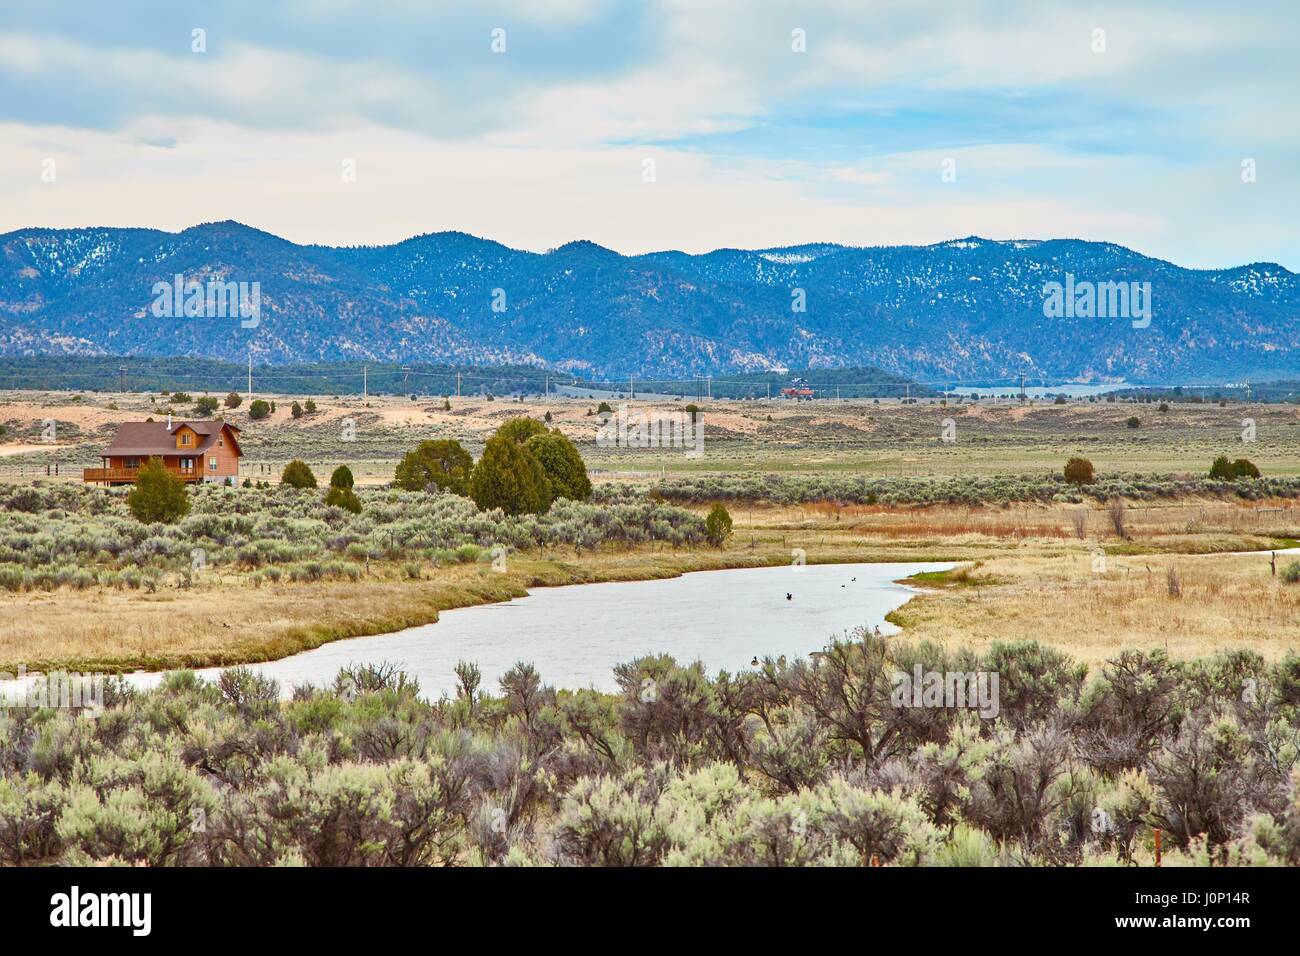 Unglaublich schöne Landschaft im Zion Nationalpark, Washington County, Utah, USA Stockfoto